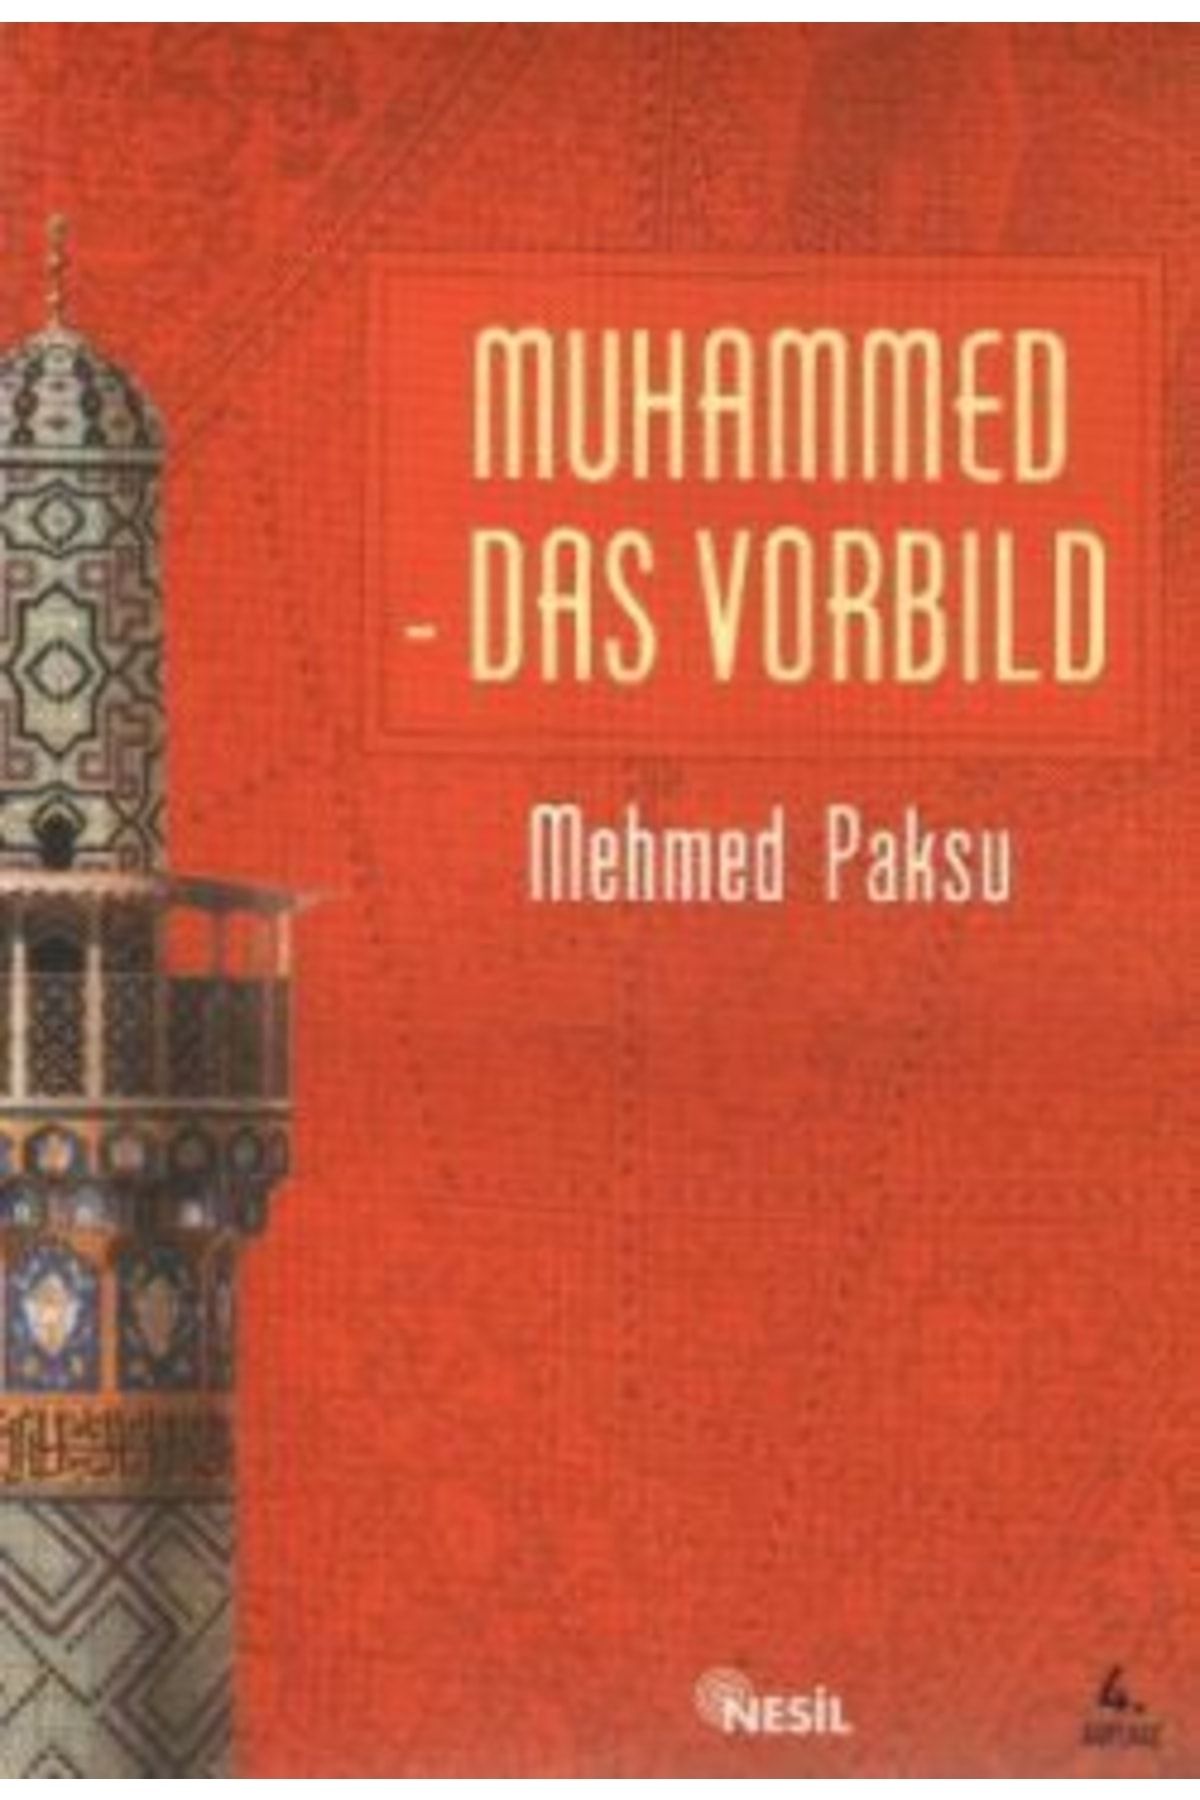 Nesil Yayınları Muhammed Das Vorbild - - Mehmed Paksu Kitabı